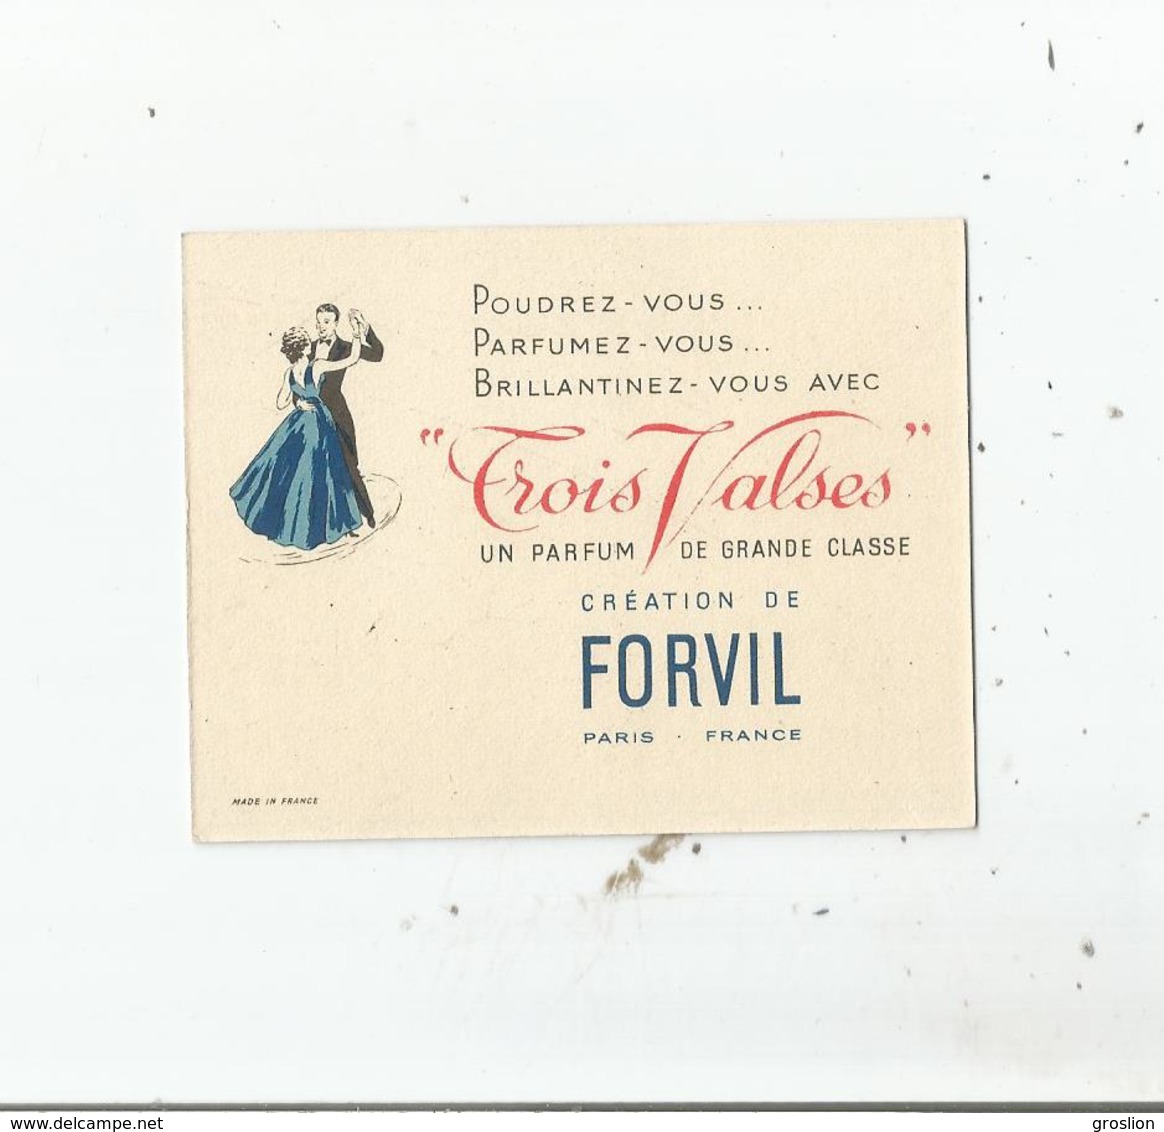 FORVIL "TROIS VALSES" CARTE PARFUMEE CALENDRIER DE 1955 - Anciennes (jusque 1960)